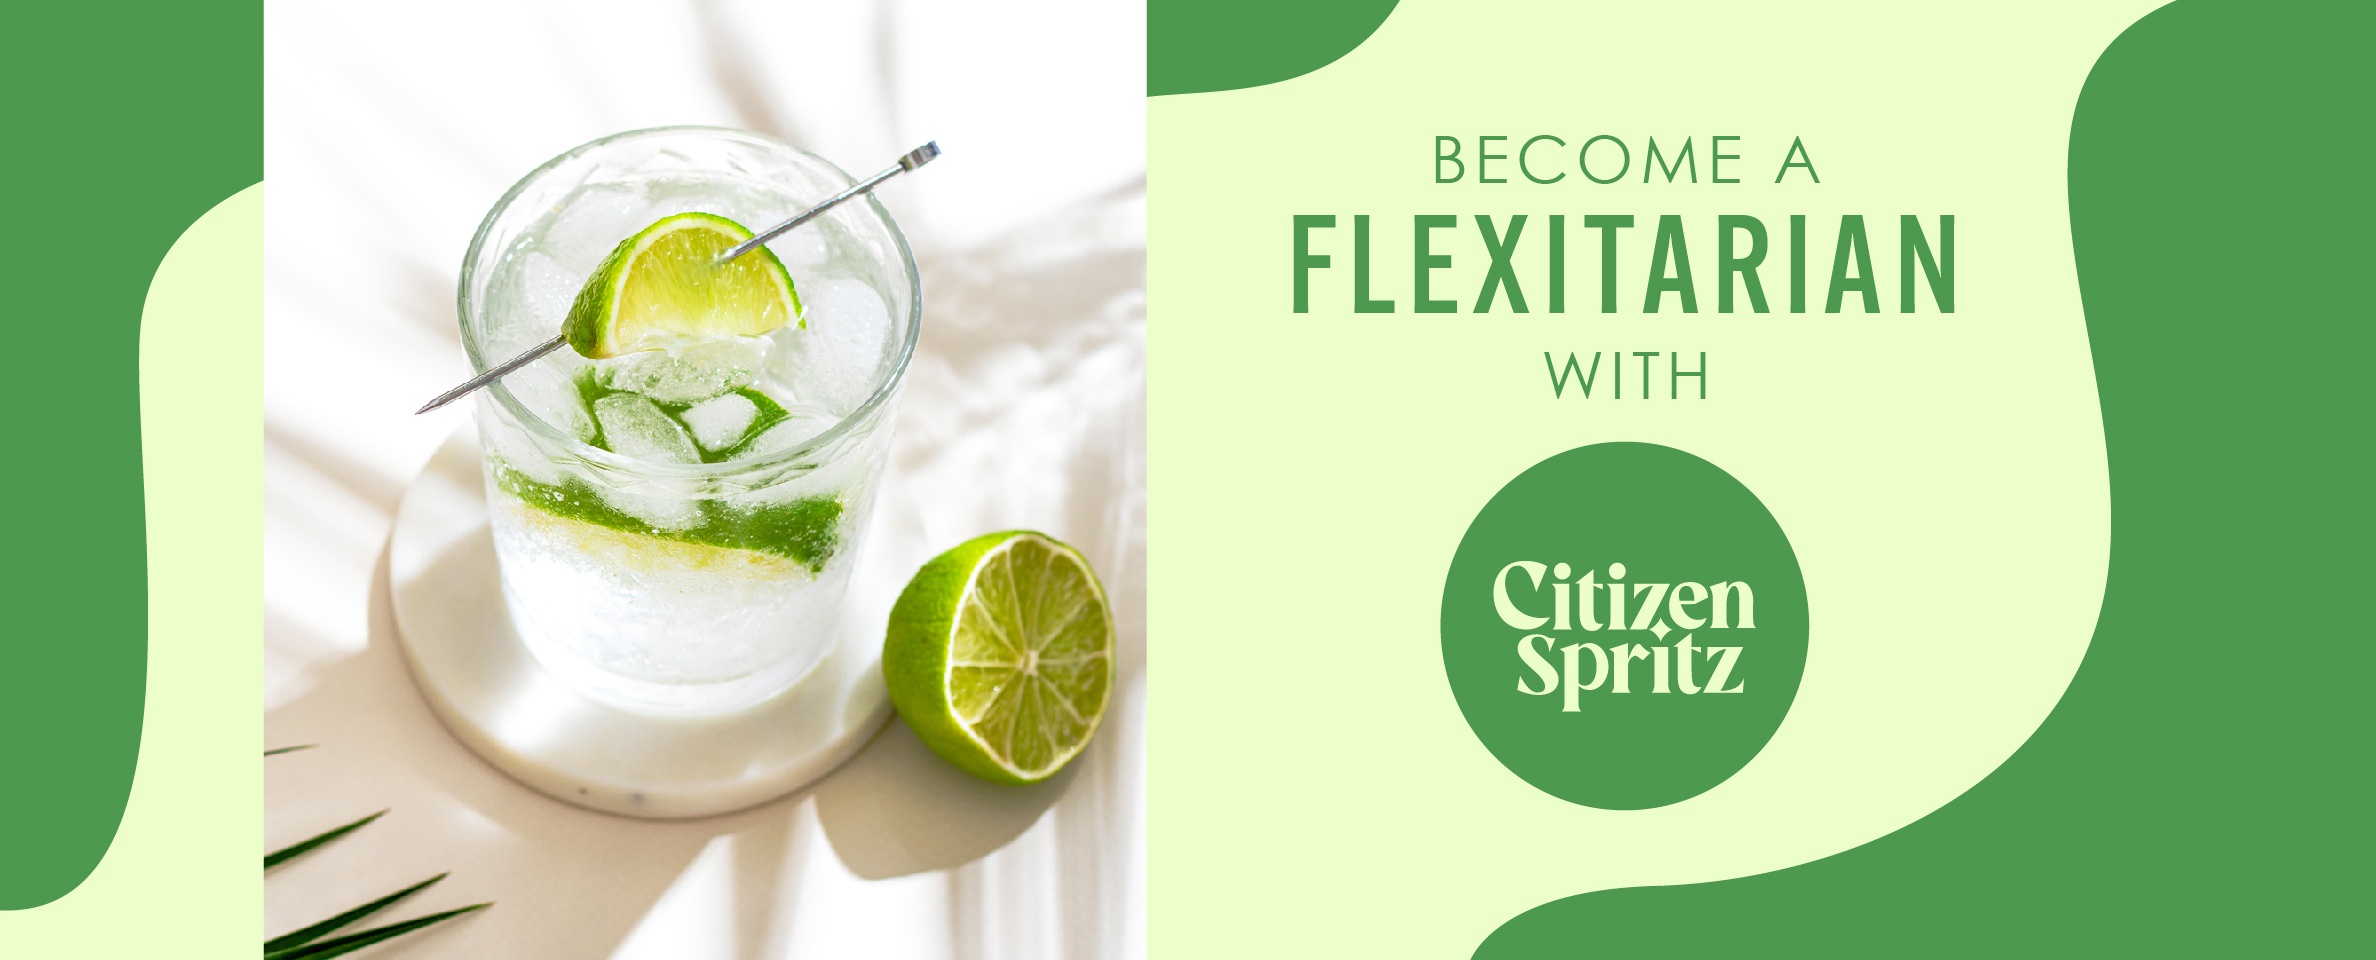 become a flexitarian with citizen spritz